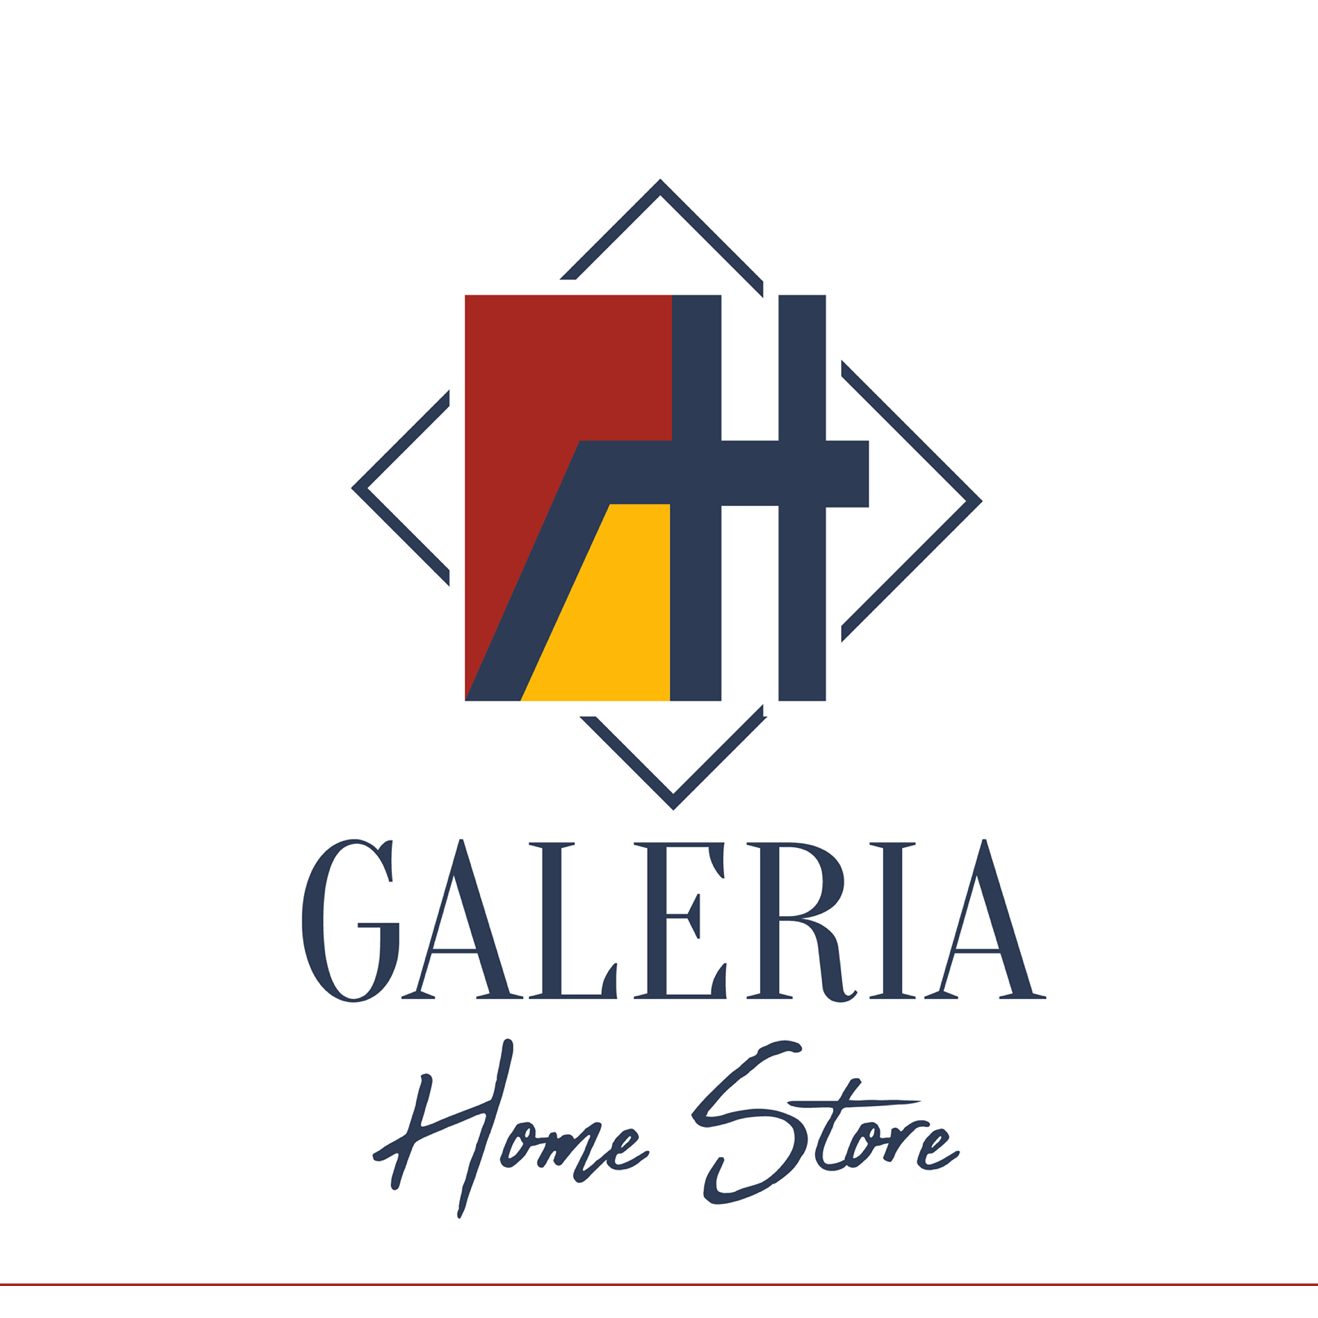 Galeria Home Store | Wall Art & Decor - Hialeah, FL 33012 - (754)704-9239 | ShowMeLocal.com